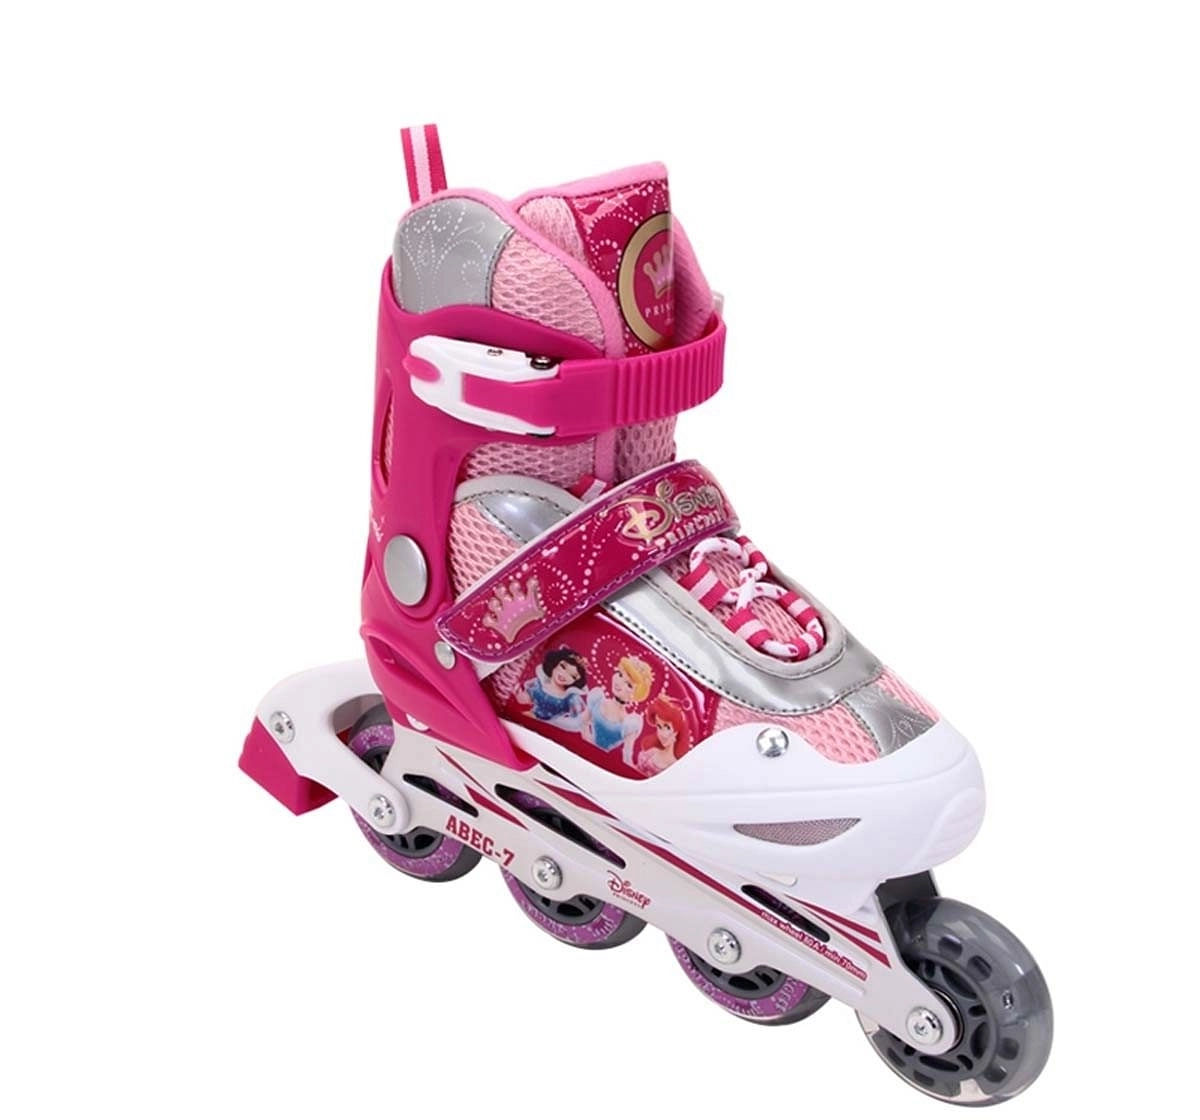 Disney Princess Inline Skate Combo Set Skates and Skateboards for Kids age 5Y+ 